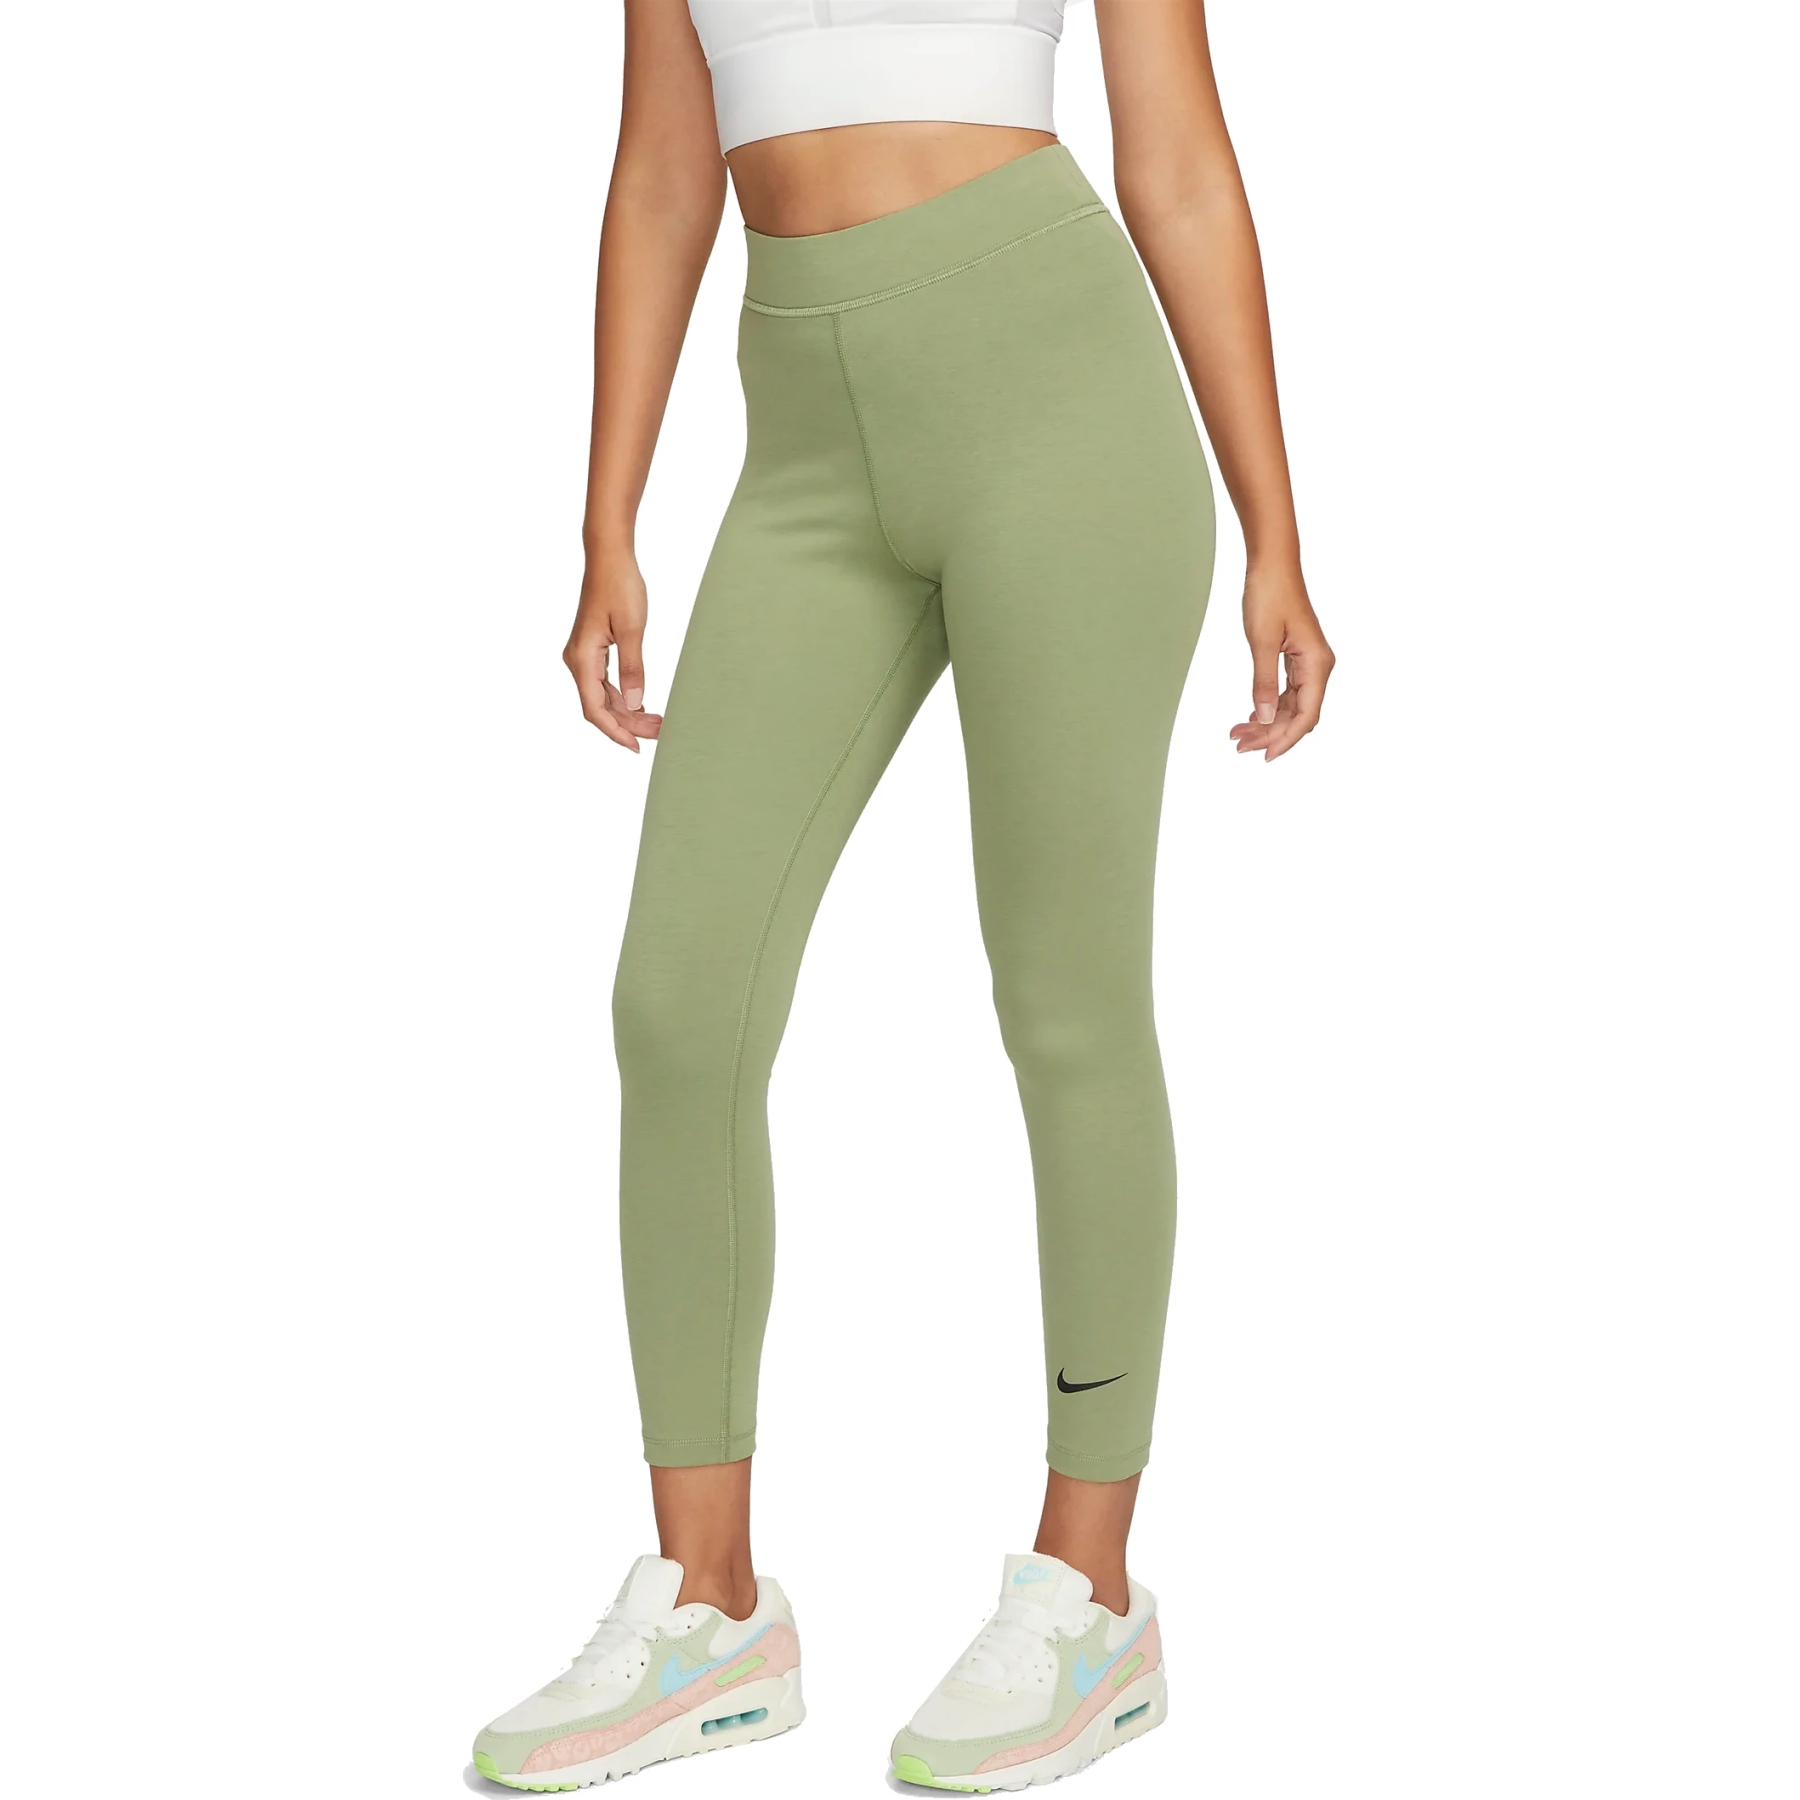 Nike Sportswear Classics 7/8 Tights Women - oil green/black DV7789-386